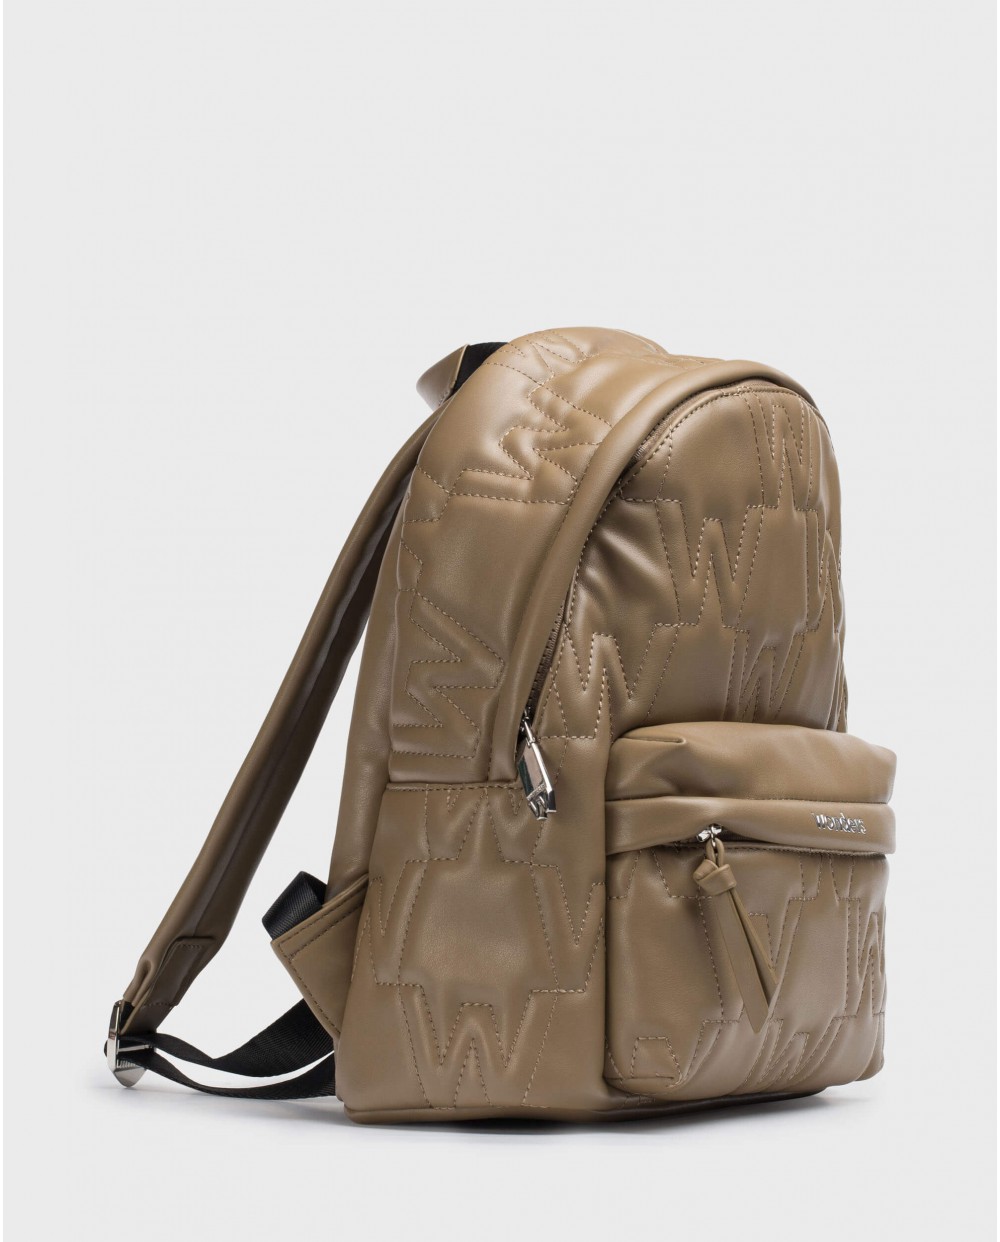 Brown SCHOOL Backpack